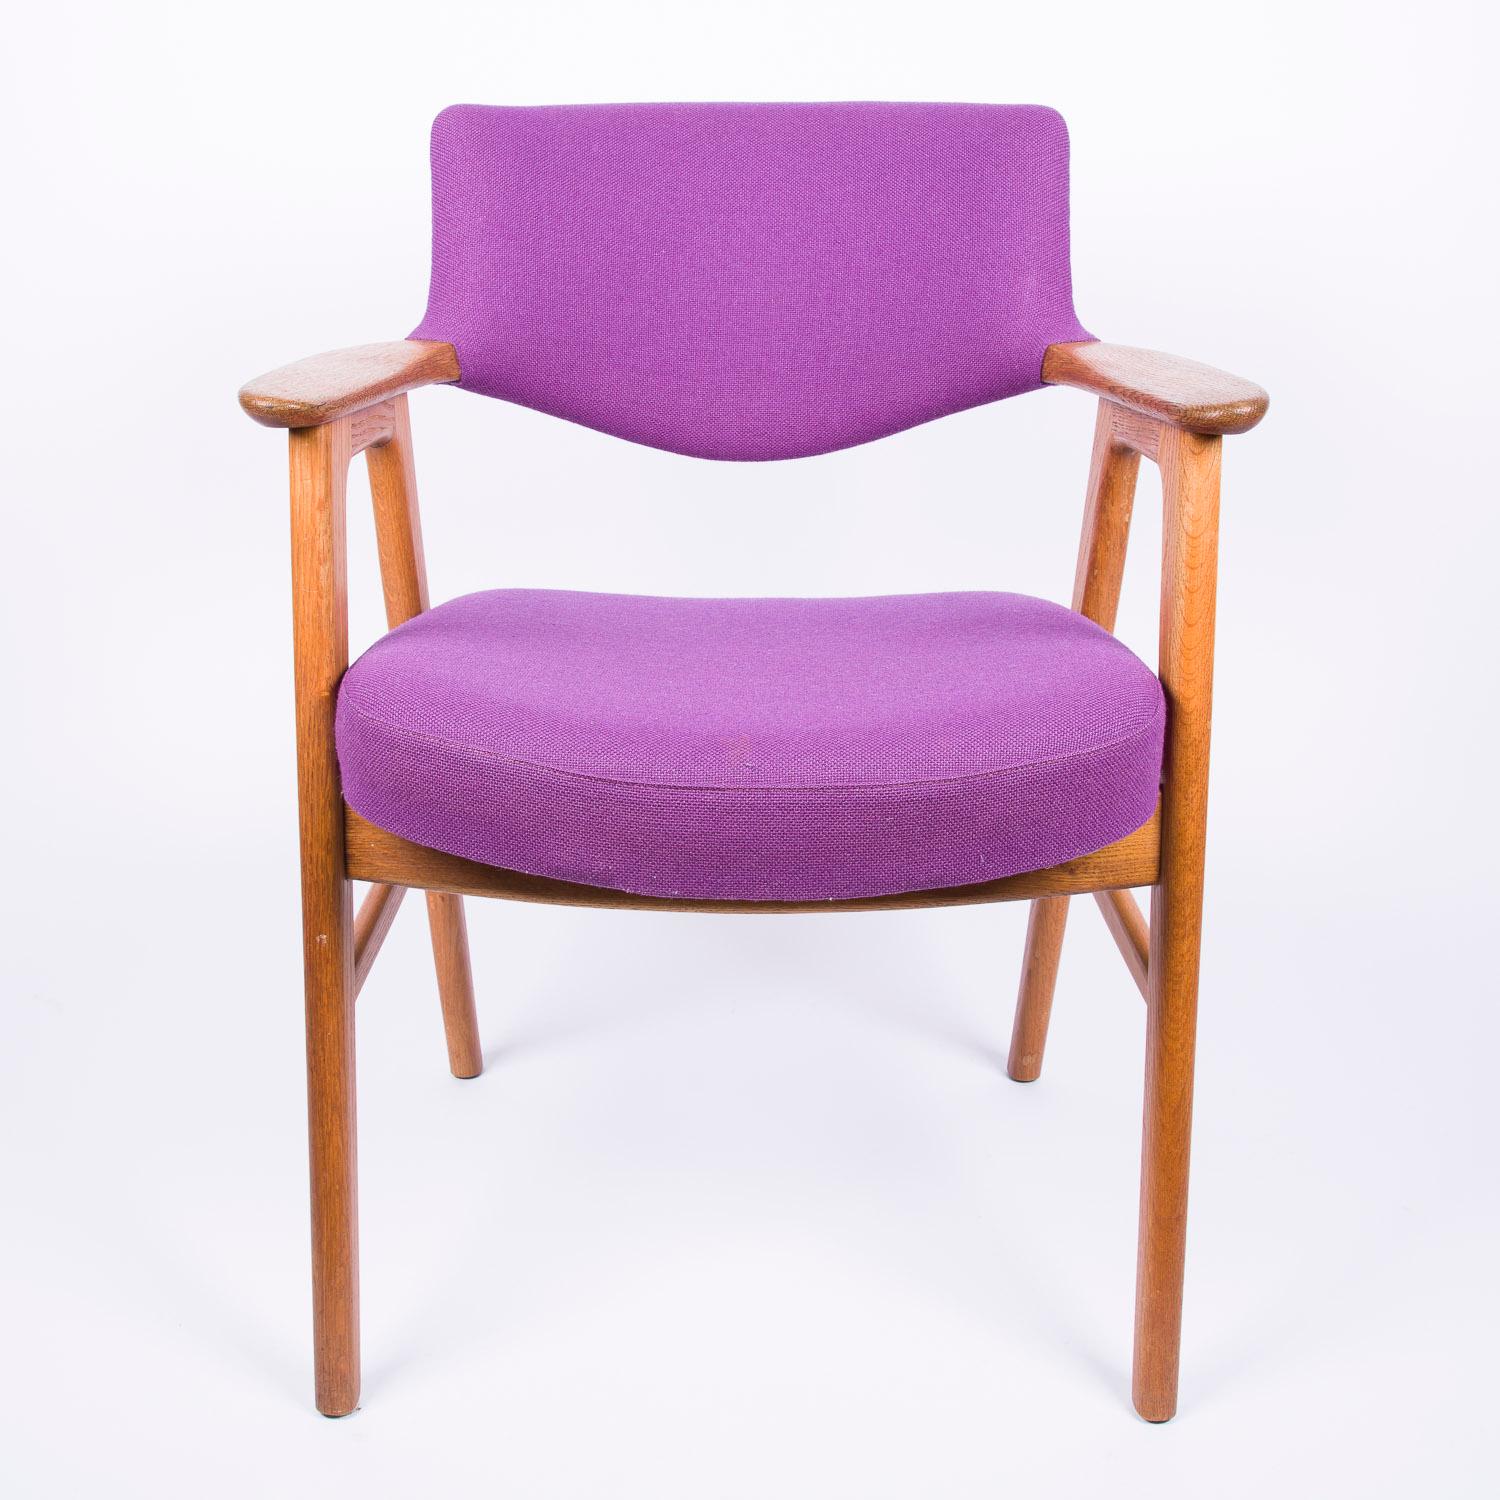 Chaise en chêne d'Erik Kierkegaard pour Høng Stolefabrik, Danemark, vers 1960.

Tapisserie d'origine en laine violette.